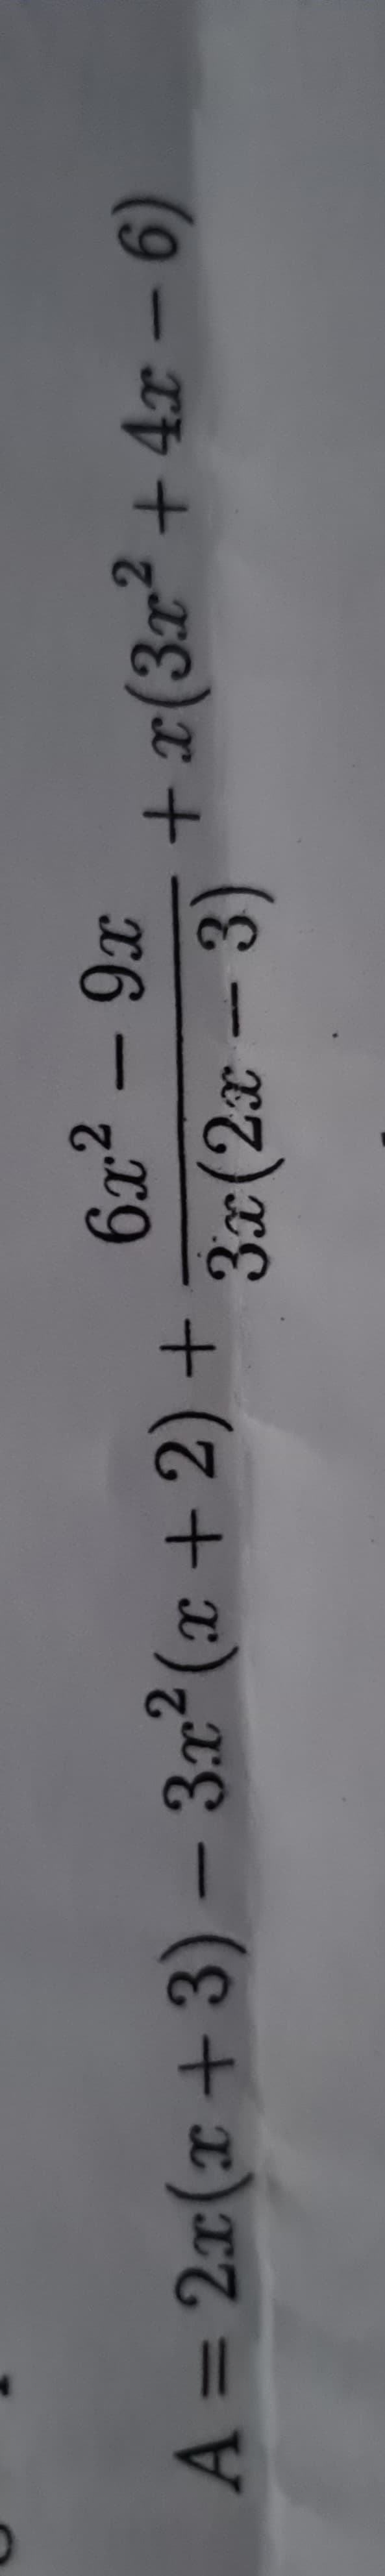 A = 2x(x + 3) − 3x² (x + 2) +
-
6x² - 9x
(2x - 3)
3x
+ x(3x² +4x − 6)